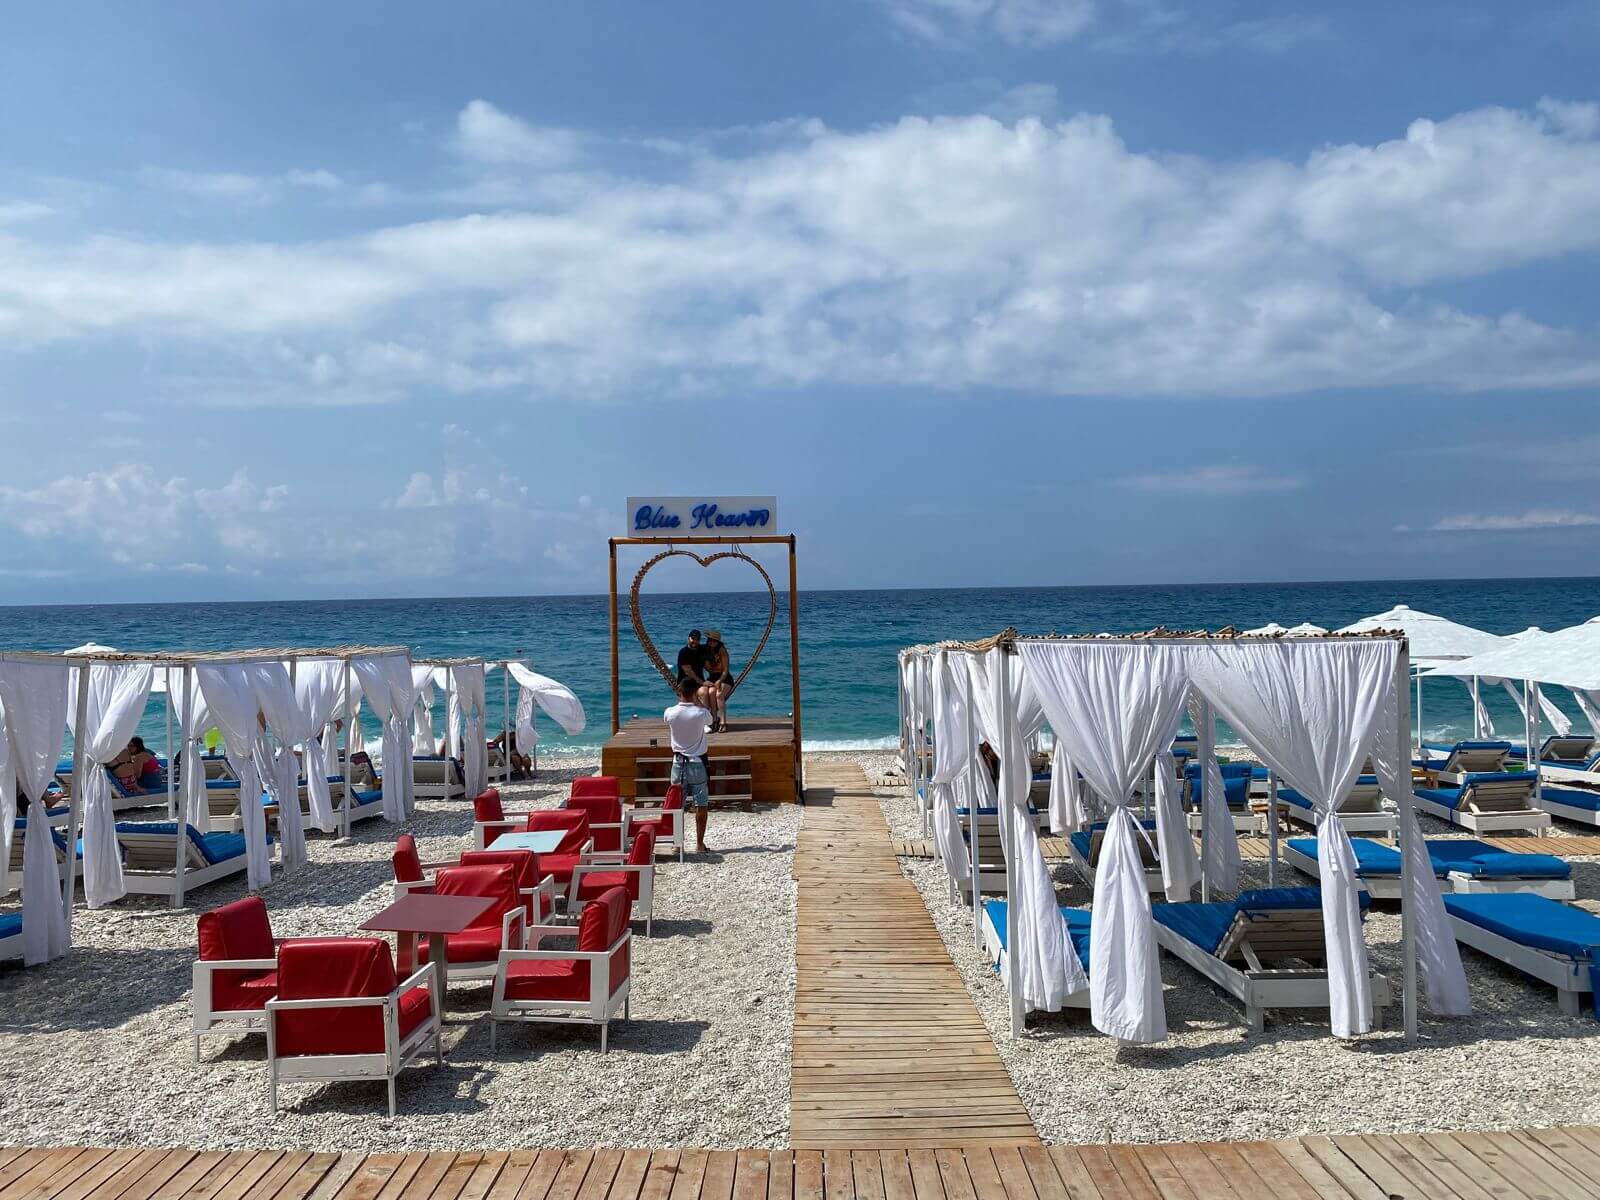 Blue Heaven Beach Bar ju ofron gjithçka ju duhet për të kaluar një ditë perfektë pranë detit.